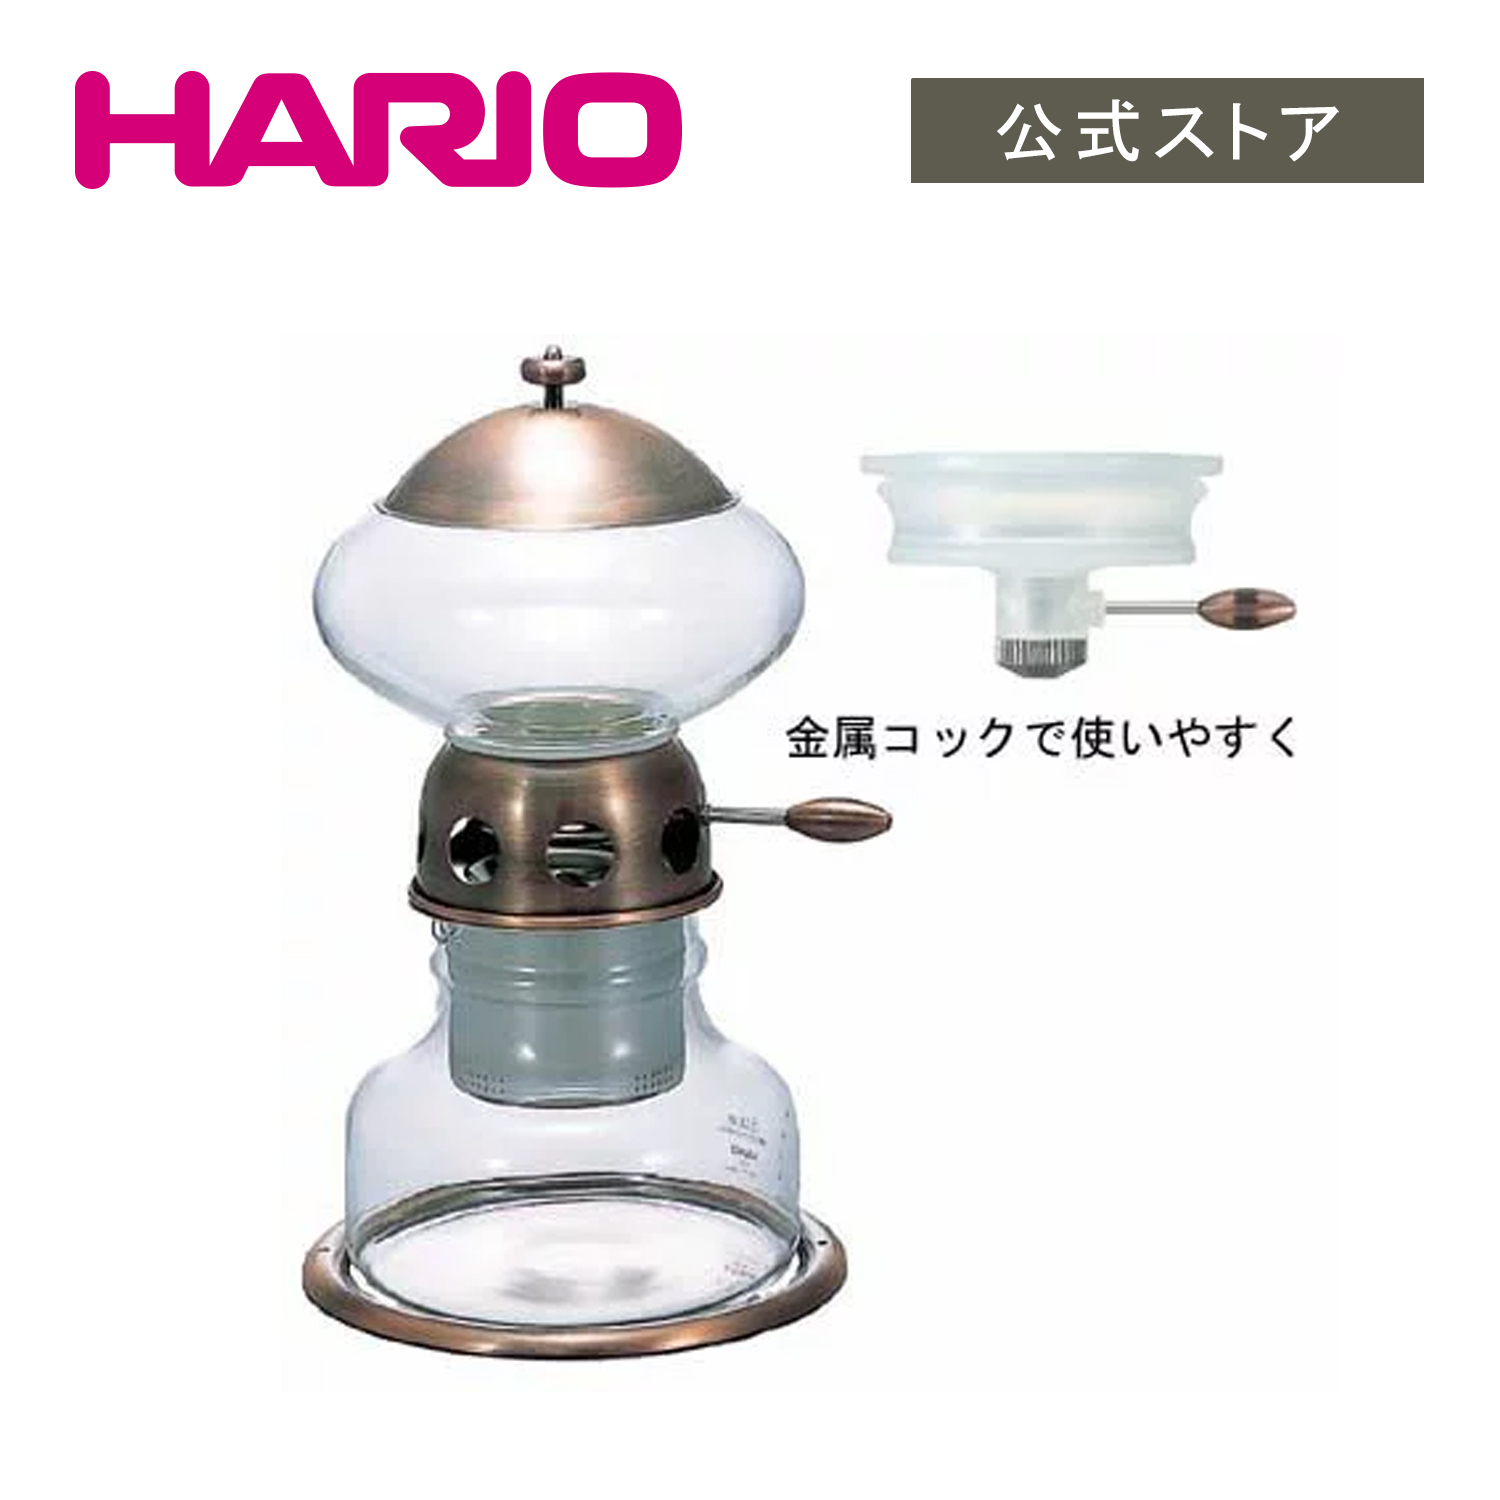 買い上げで送料無料 ウォータードリッパー・ポタN HARIO 調理器具